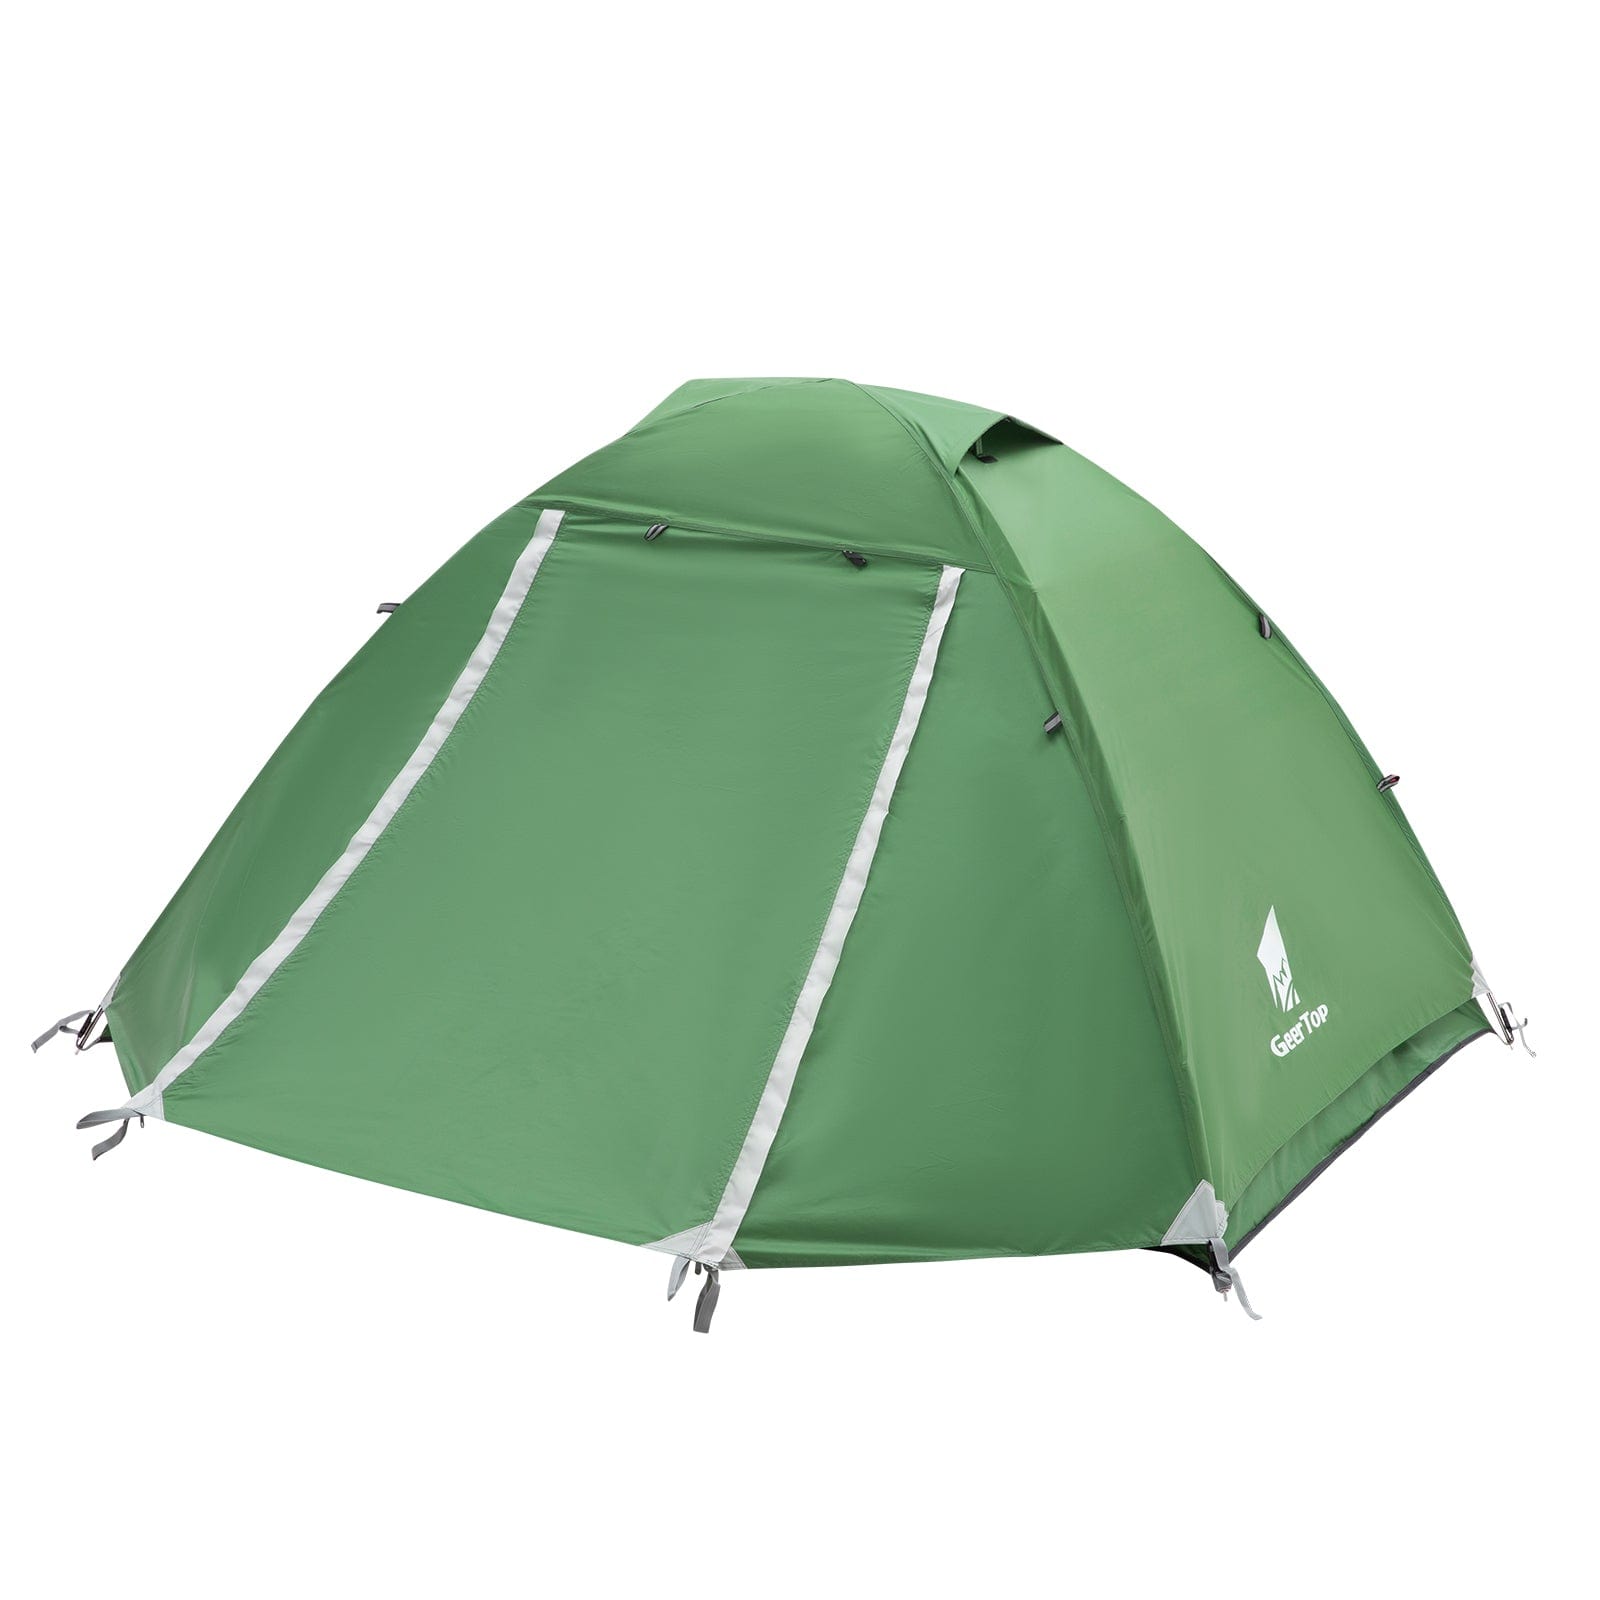 GeerTop Outdoor Store Tents GeerTop 2 Person 3 Season Camping Tent